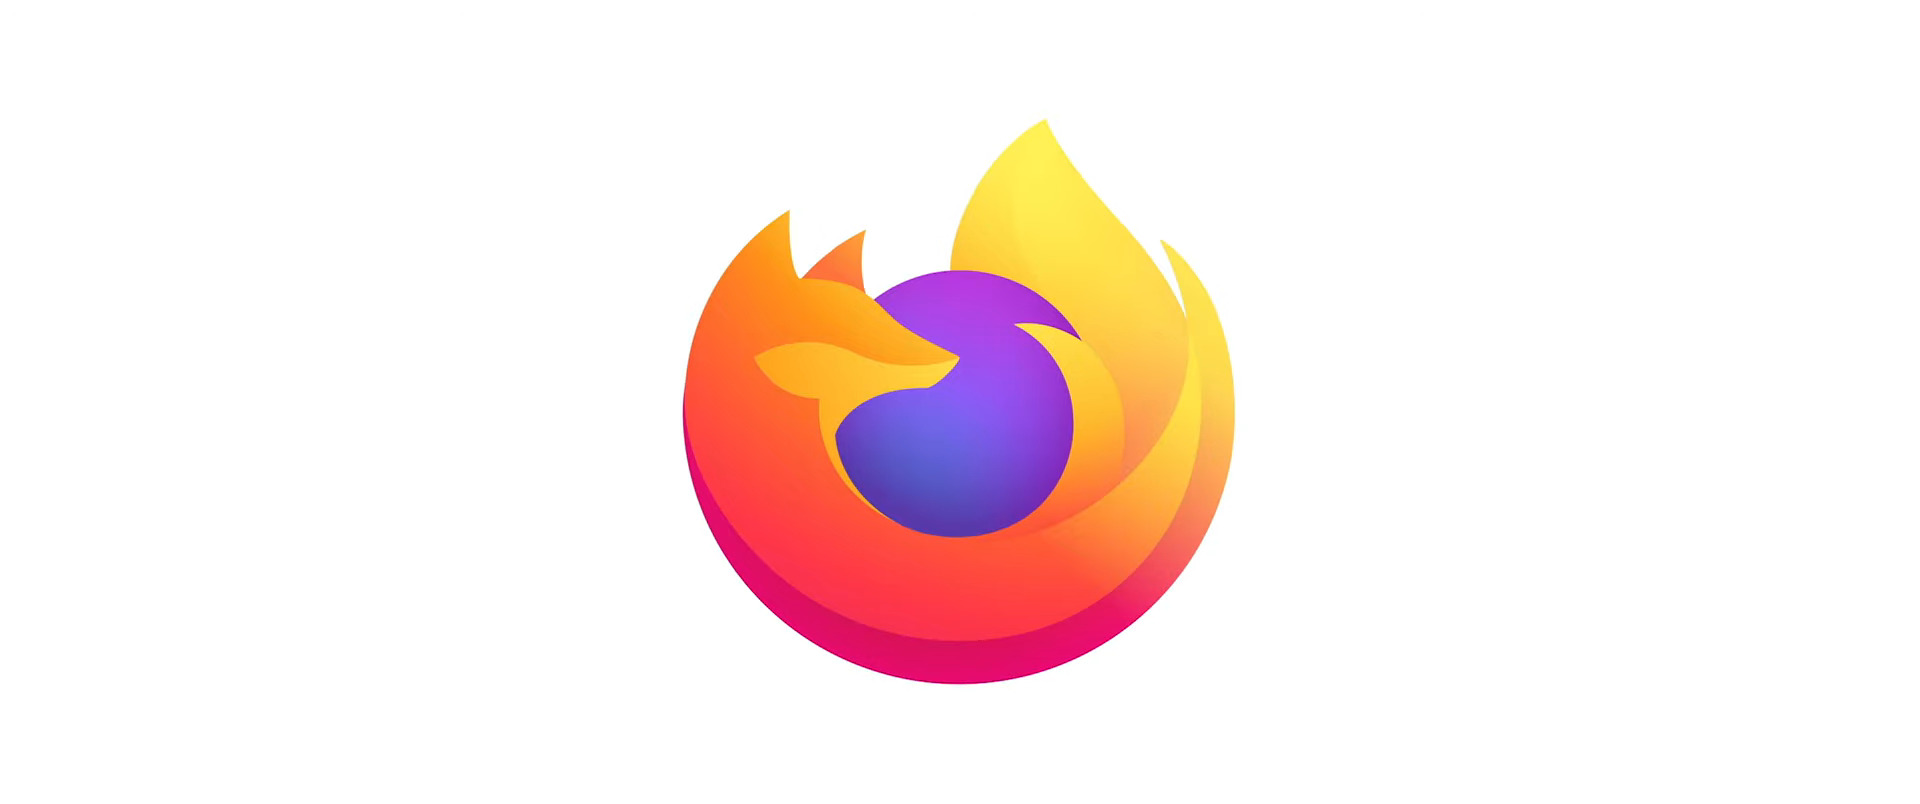 Un nouveau patch Mozilla Firefox corrige une importante faille zero day